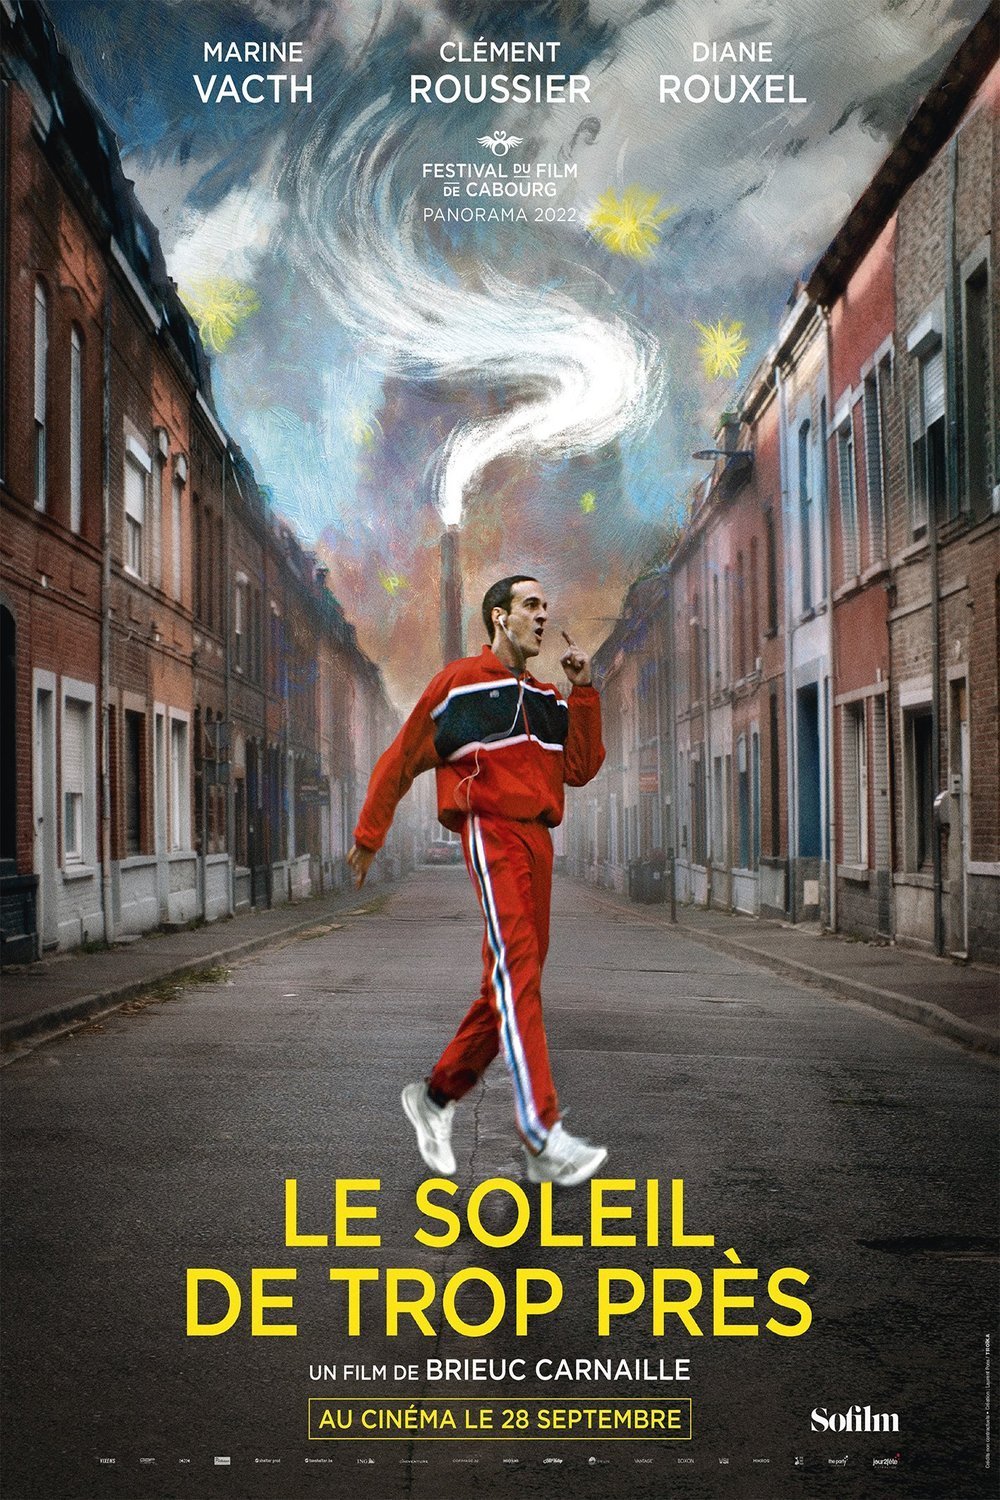 Poster of the movie Le soleil de trop près